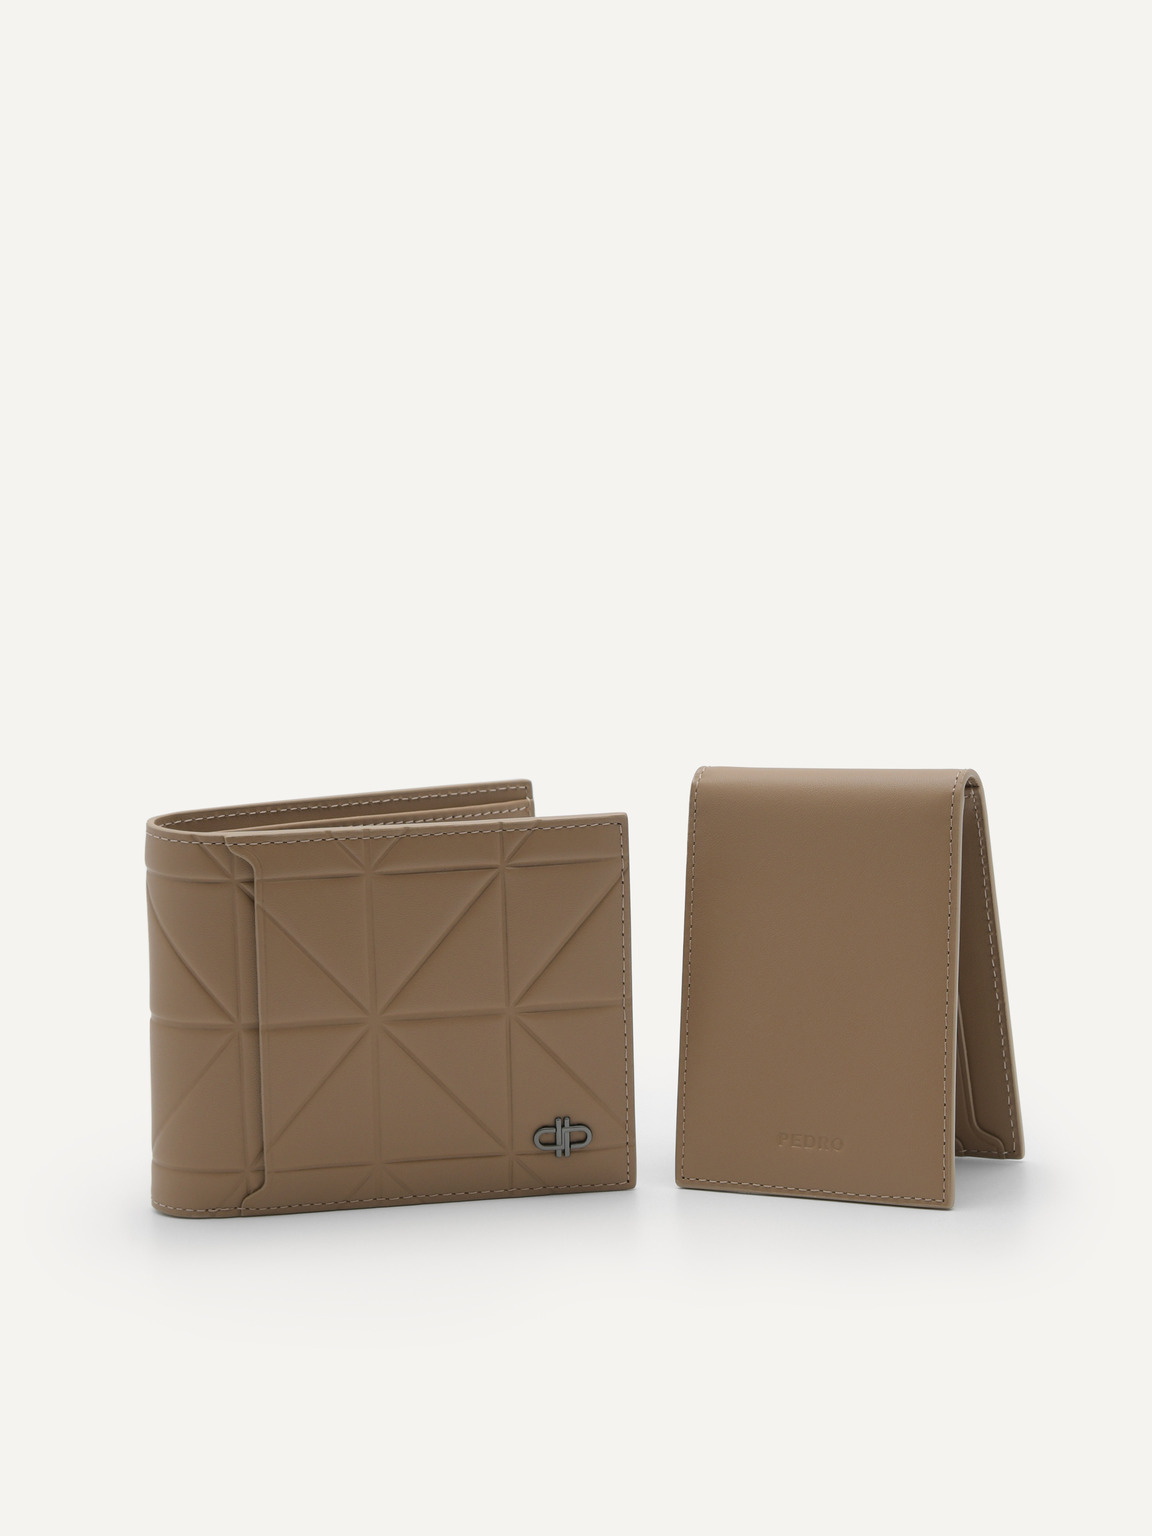 PEDRO標誌幾何圖案皮革雙折疊錢包配貼袋, 灰褐色